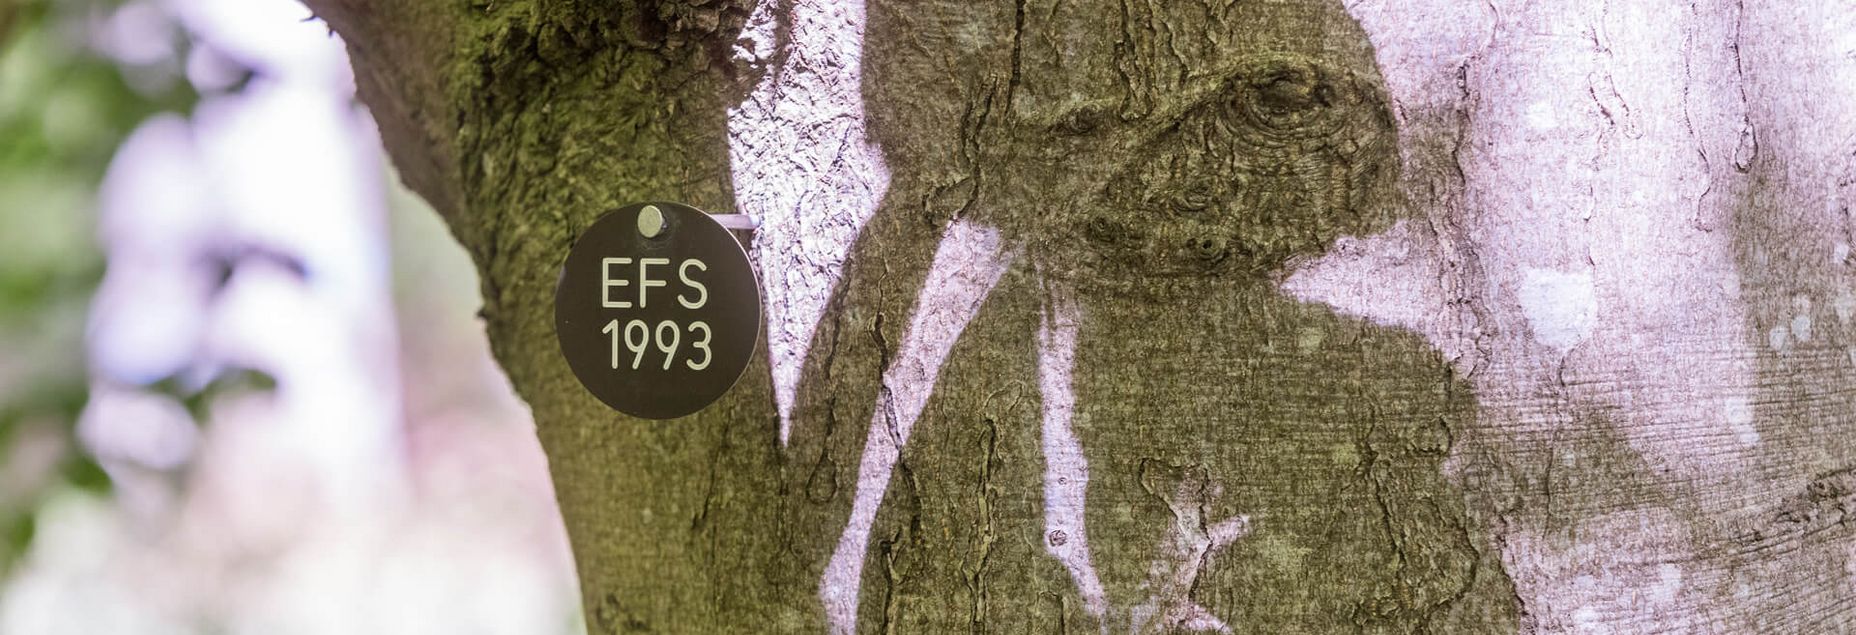 Baum EFS 1993 - Plakette